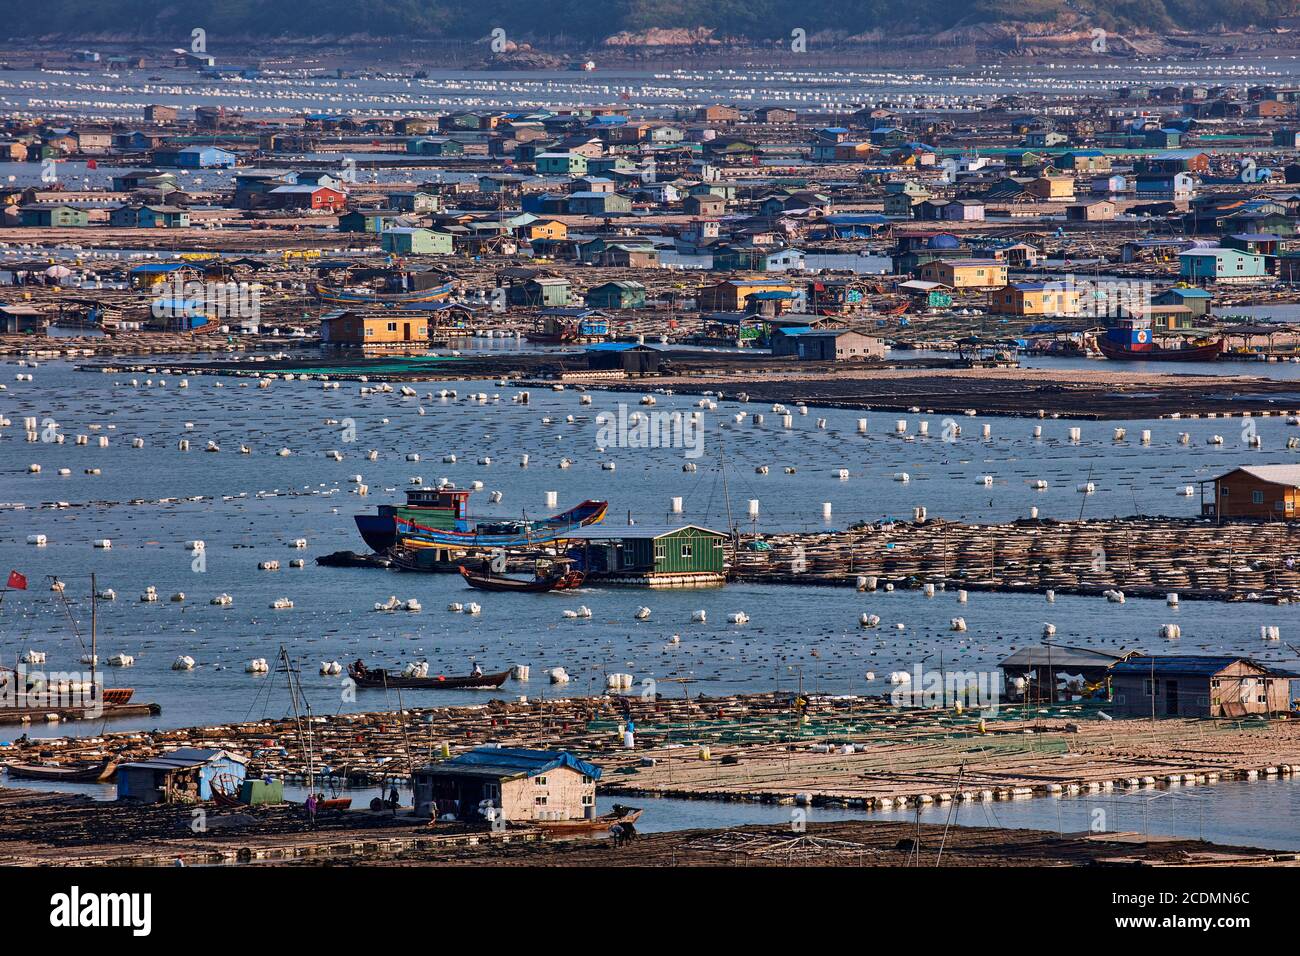 Ville flottante dans la baie, maisons sur des constructions en bambou avec des aquacultures, Xiapu, Chine Banque D'Images